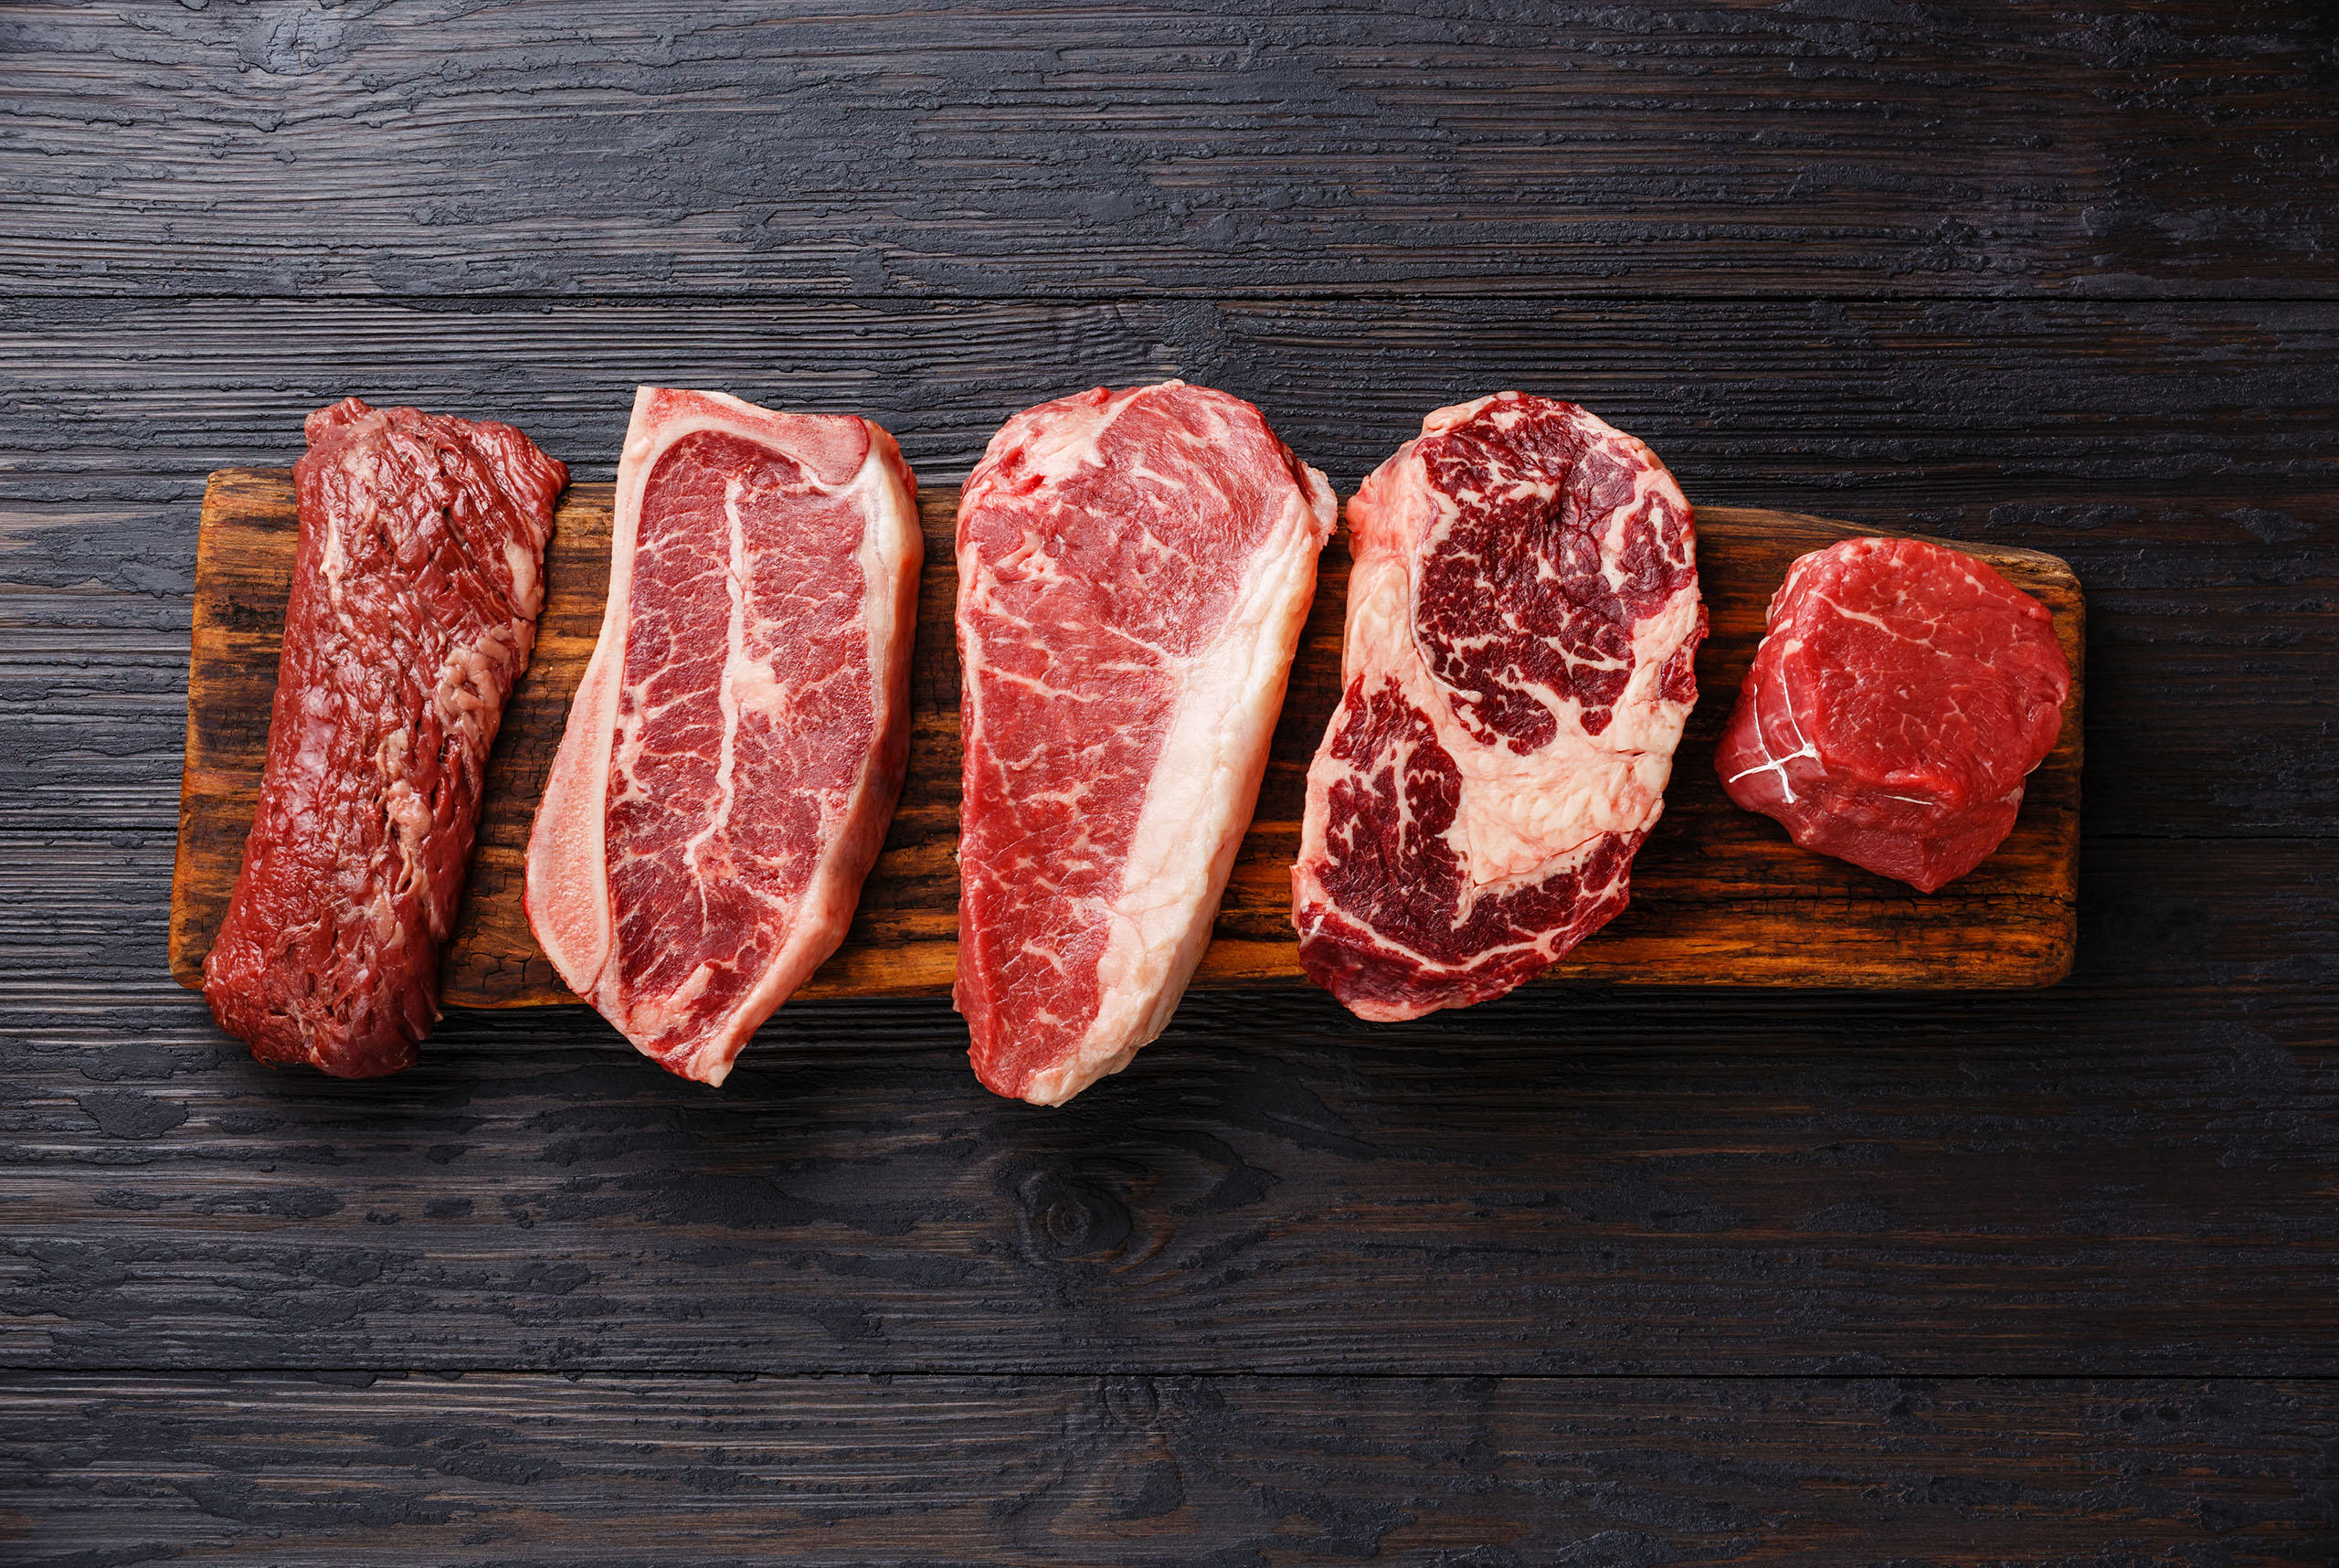 Толщина кошелька влияет на жирность мяса: по результатам анализа показателей рынка мяса и мясопереработки в Украине